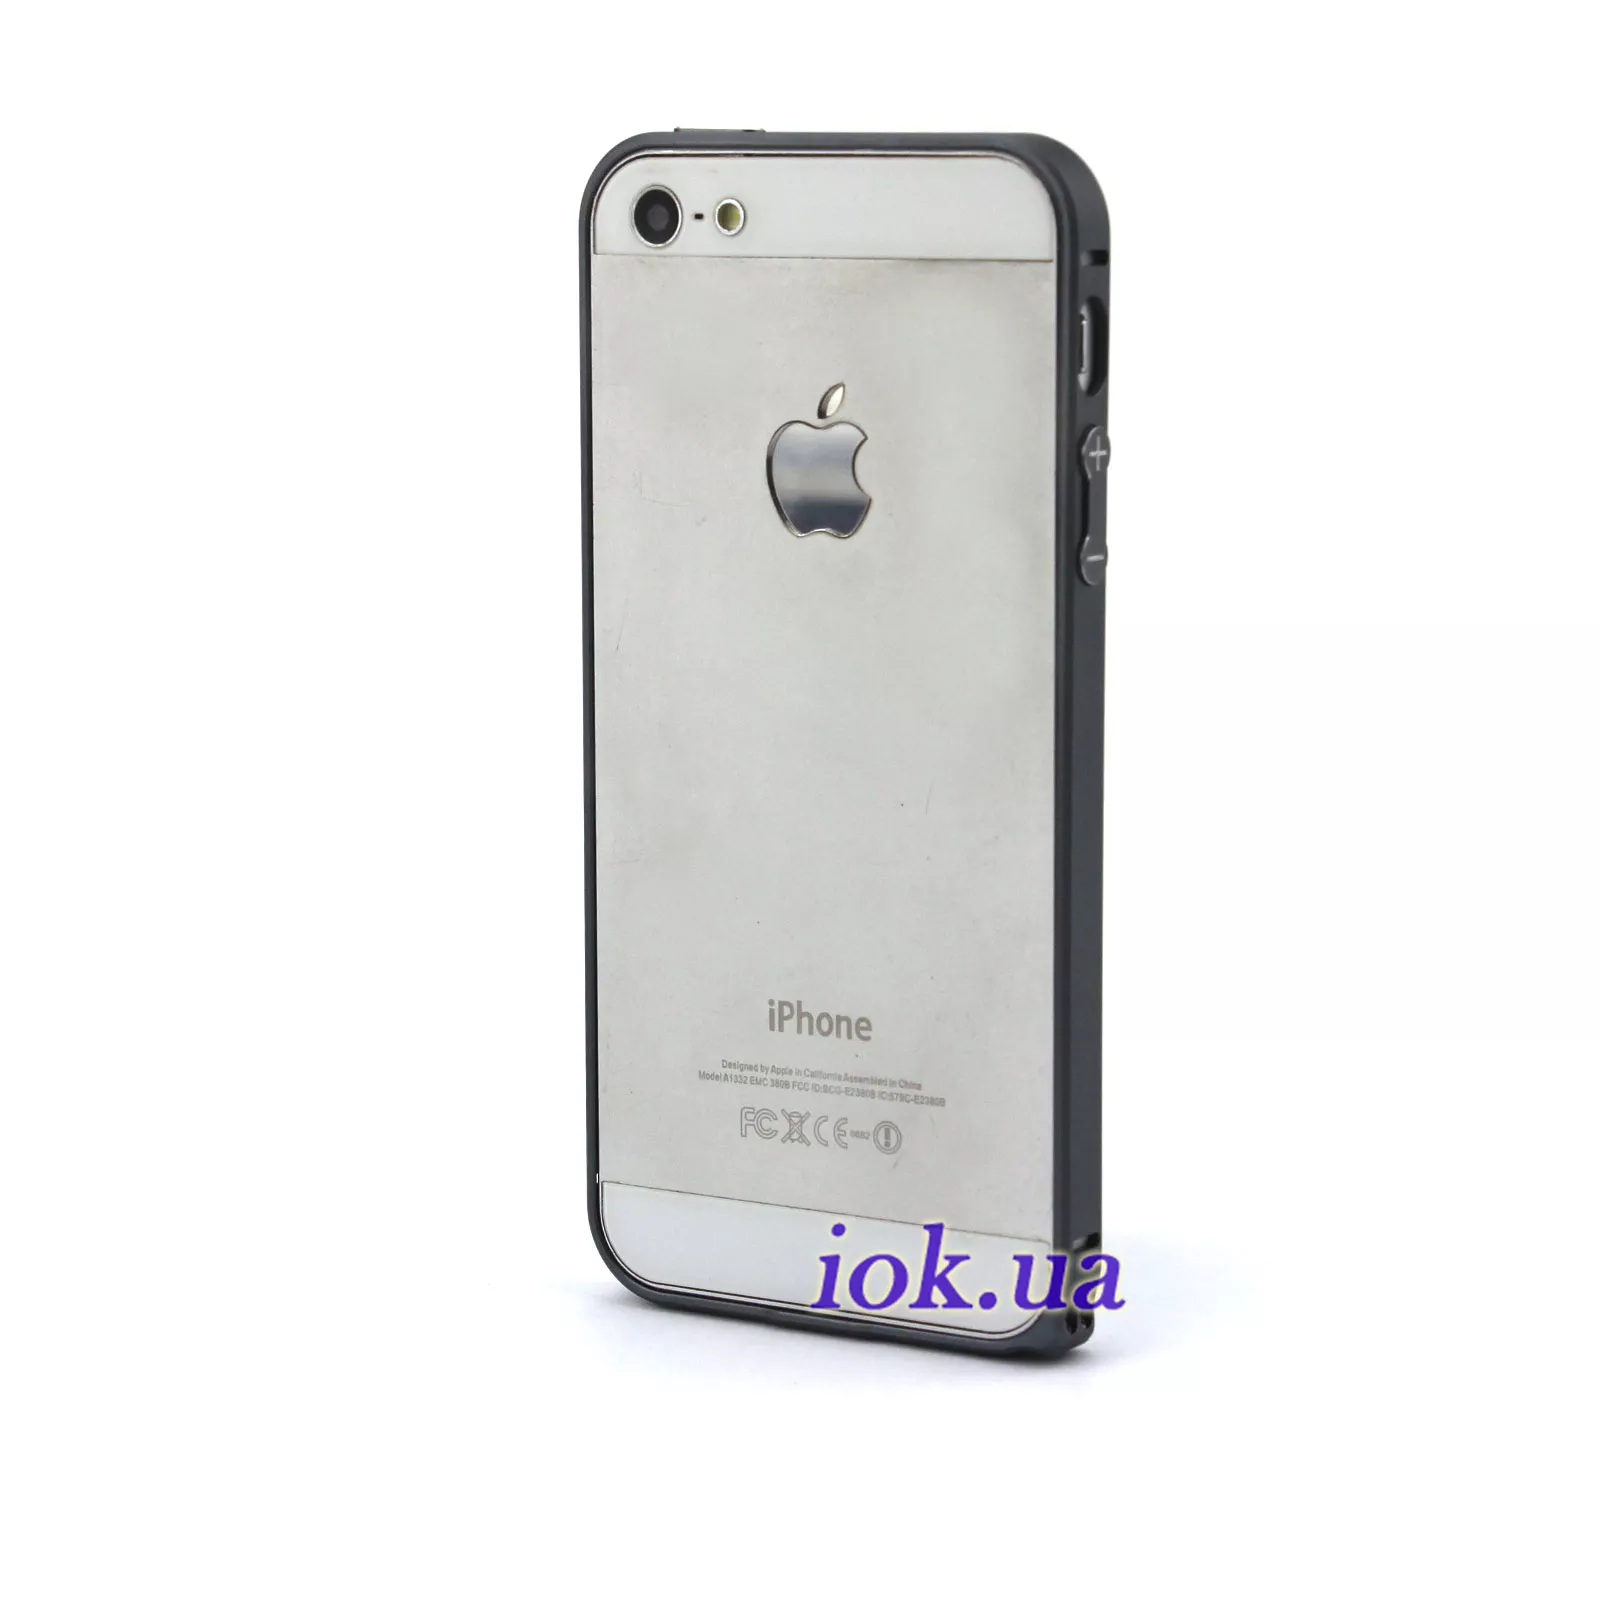 Тонкий алюминиевый бампер на iPhone 5/5S - Crossline, графитовый